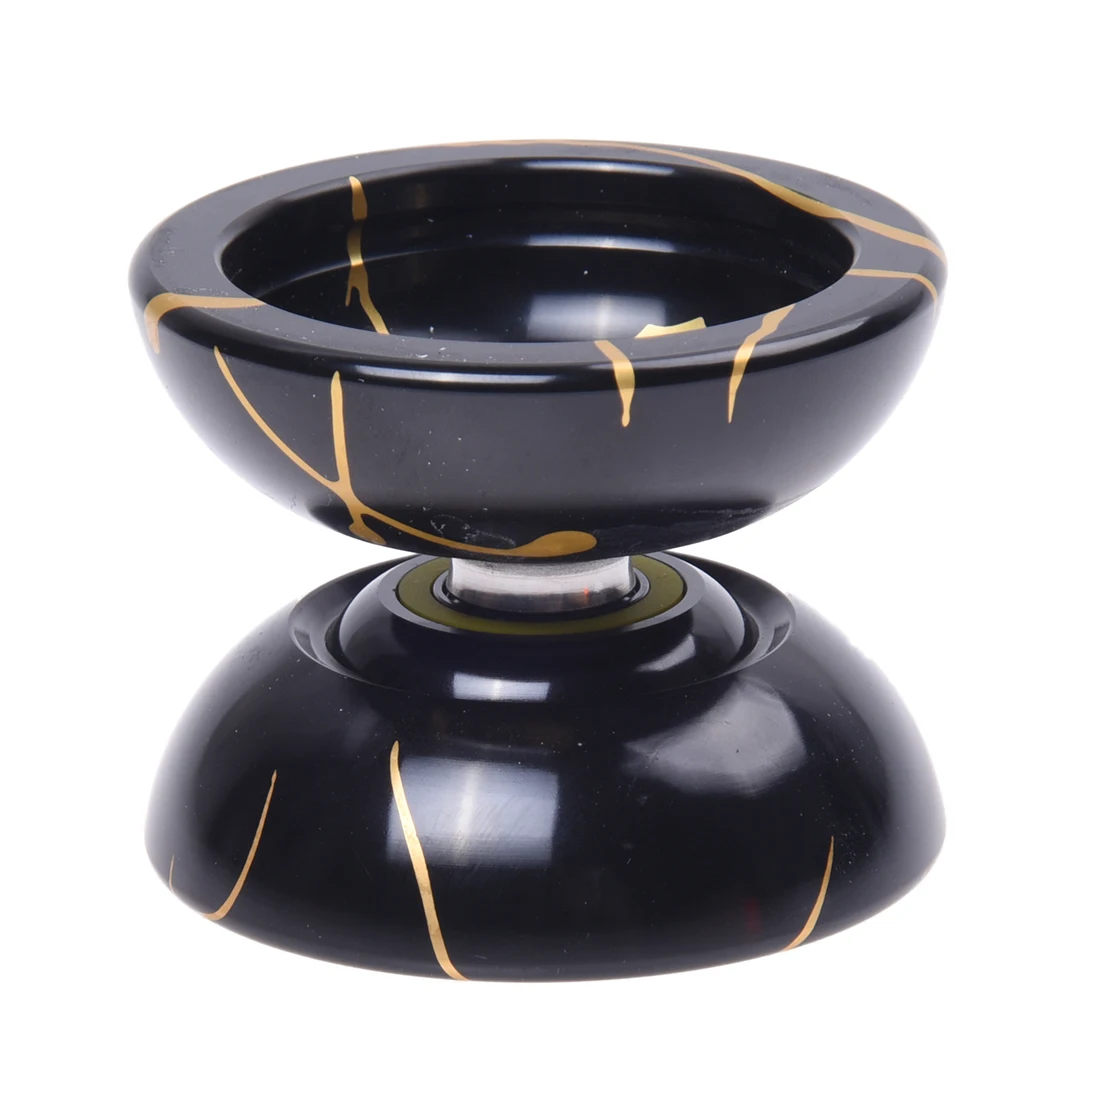 Горячая Распродажа Магия Йо-йо дизайн Волшебные Йо-йо N11 сплав Алюминий профессионального йо-йо Йо-йо игрушка Йо-йо шар золотой+ черный